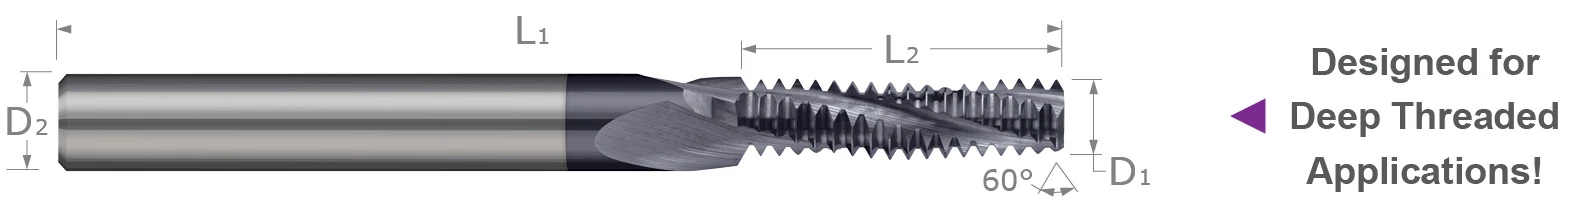 螺纹铣削刀具 - 多种形式 - 长长笛 - 联合螺纹